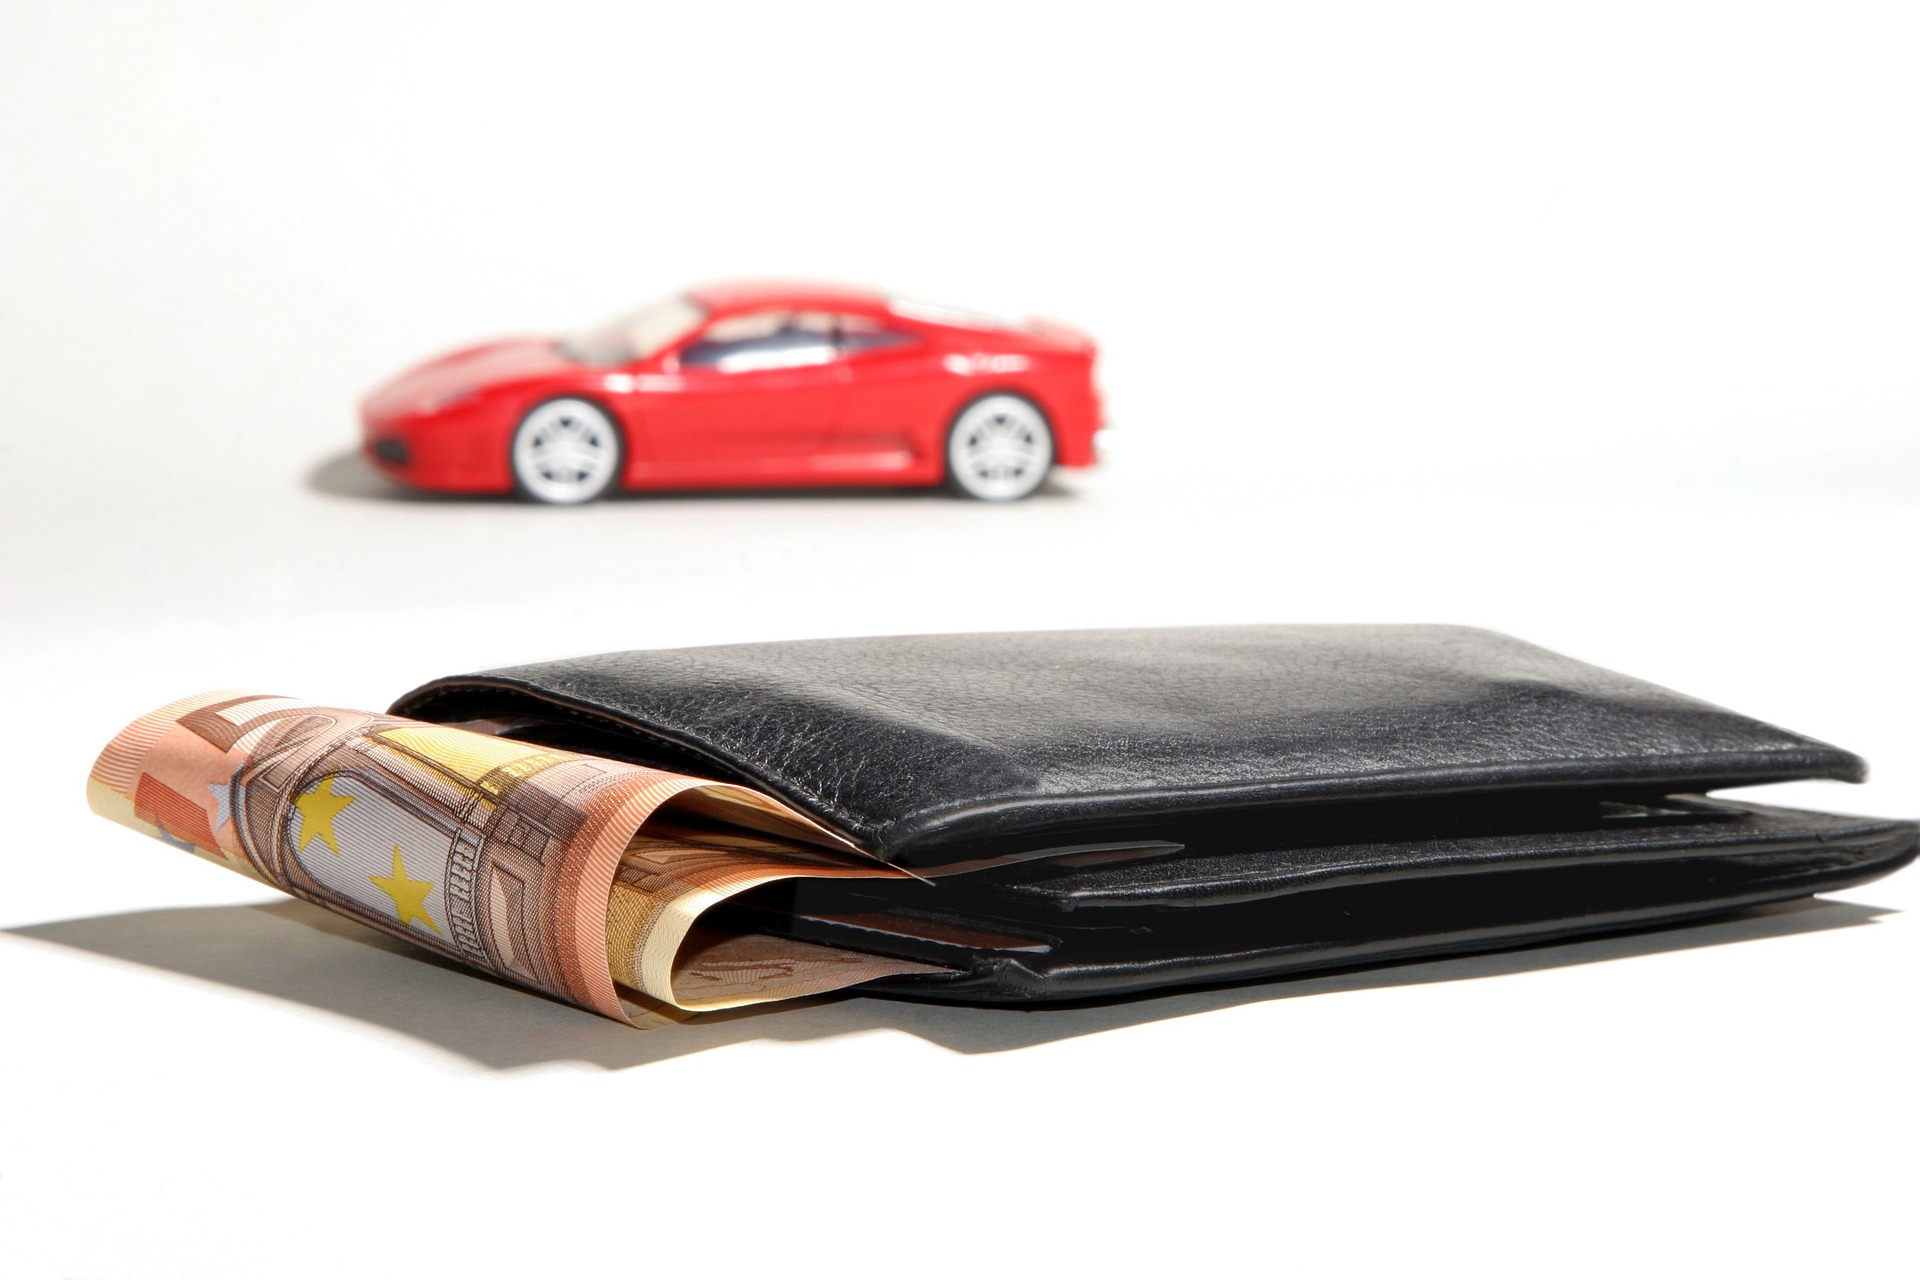 固定費削減 自動車保険の見直し 解約 乗り換え のメリット デメリット Chiojiブログ